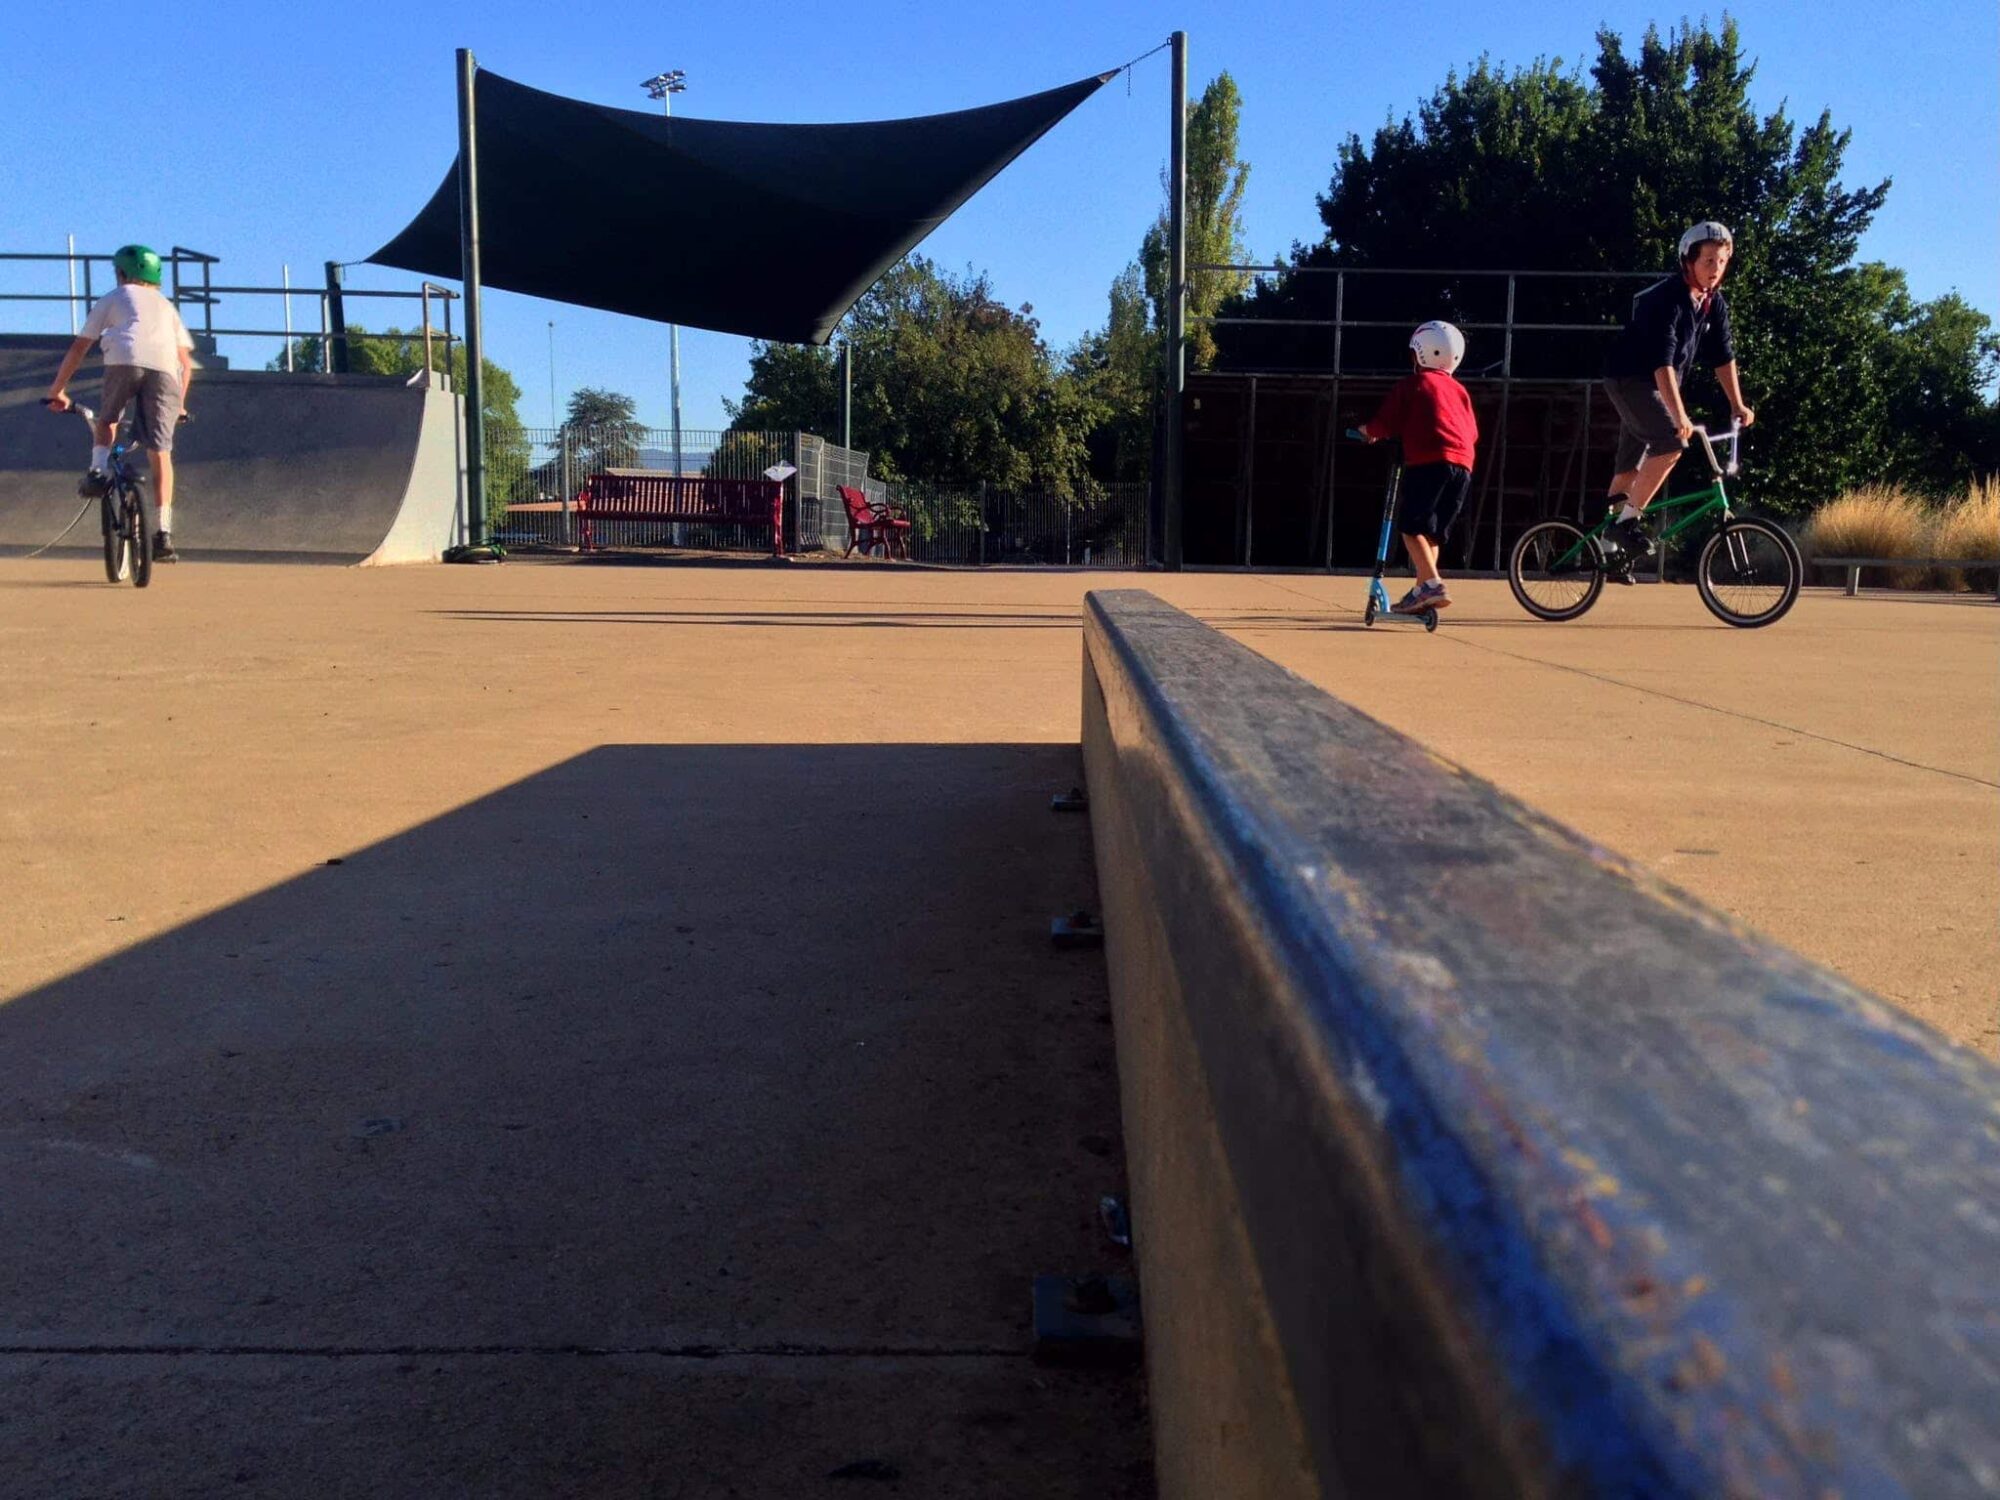 Mansfield Skate Park